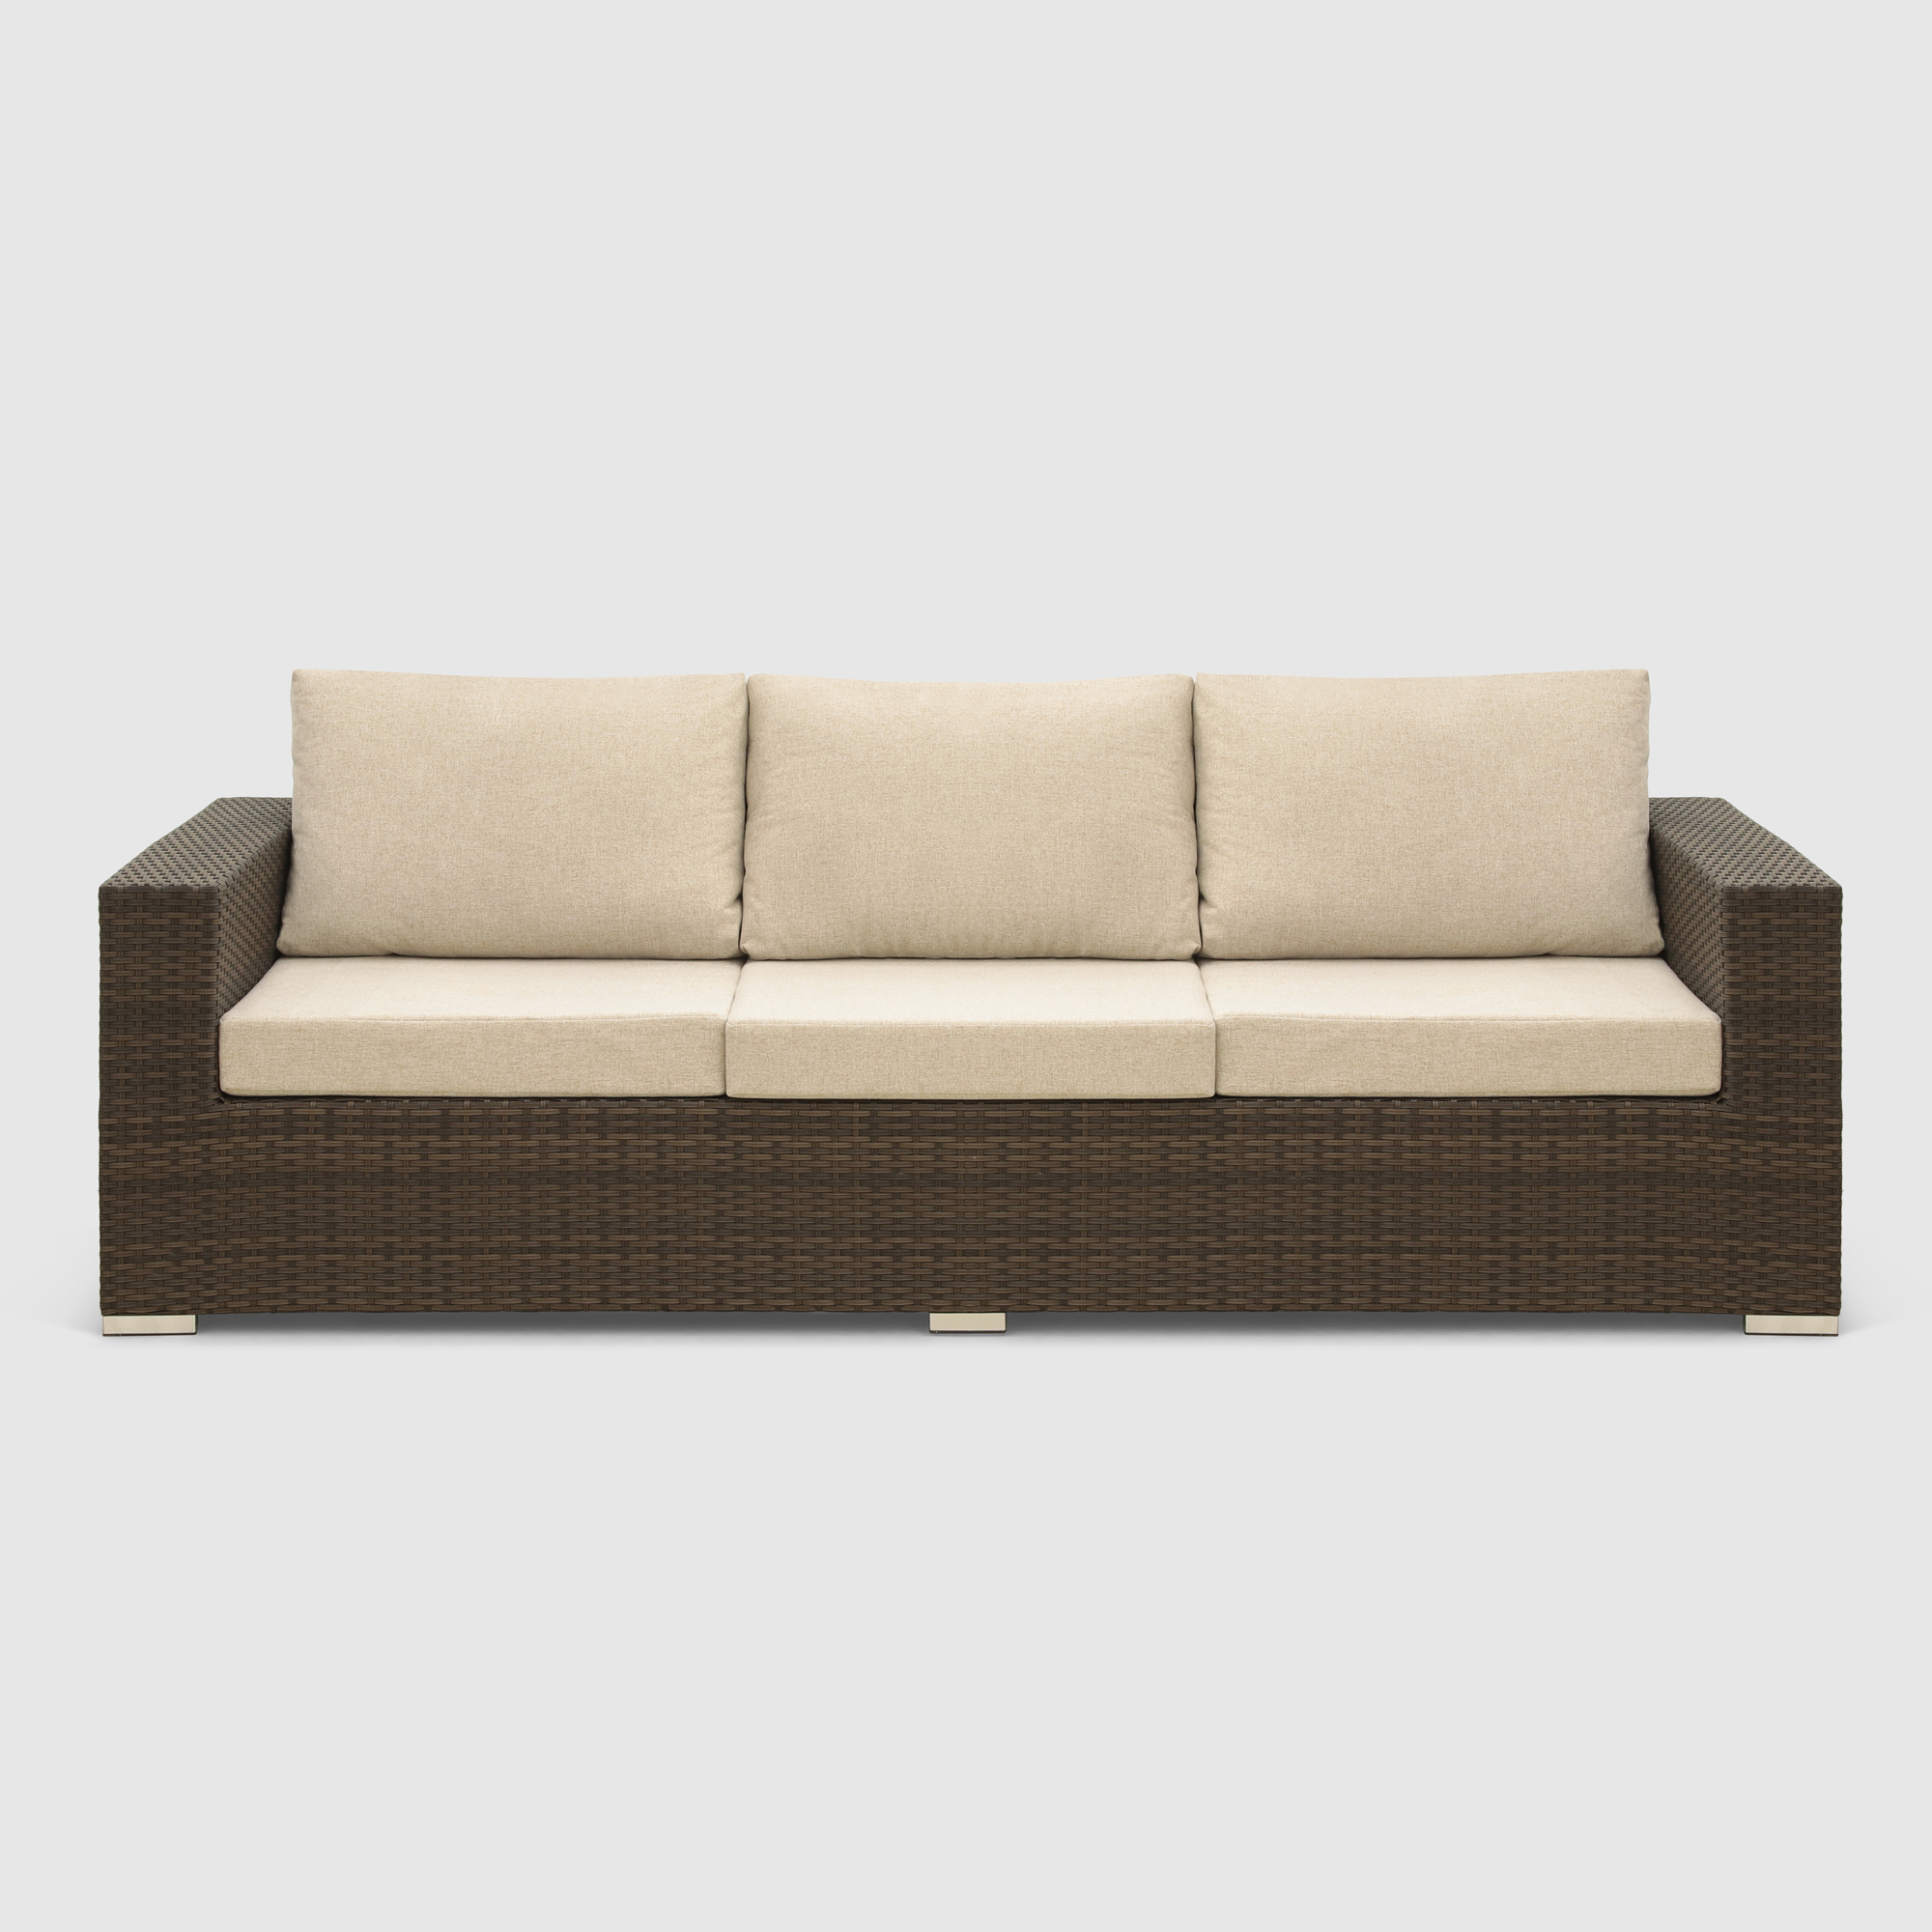 Комплект мебели Mavi rattan 4 предмета (041-036dky), цвет коричневый - фото 5